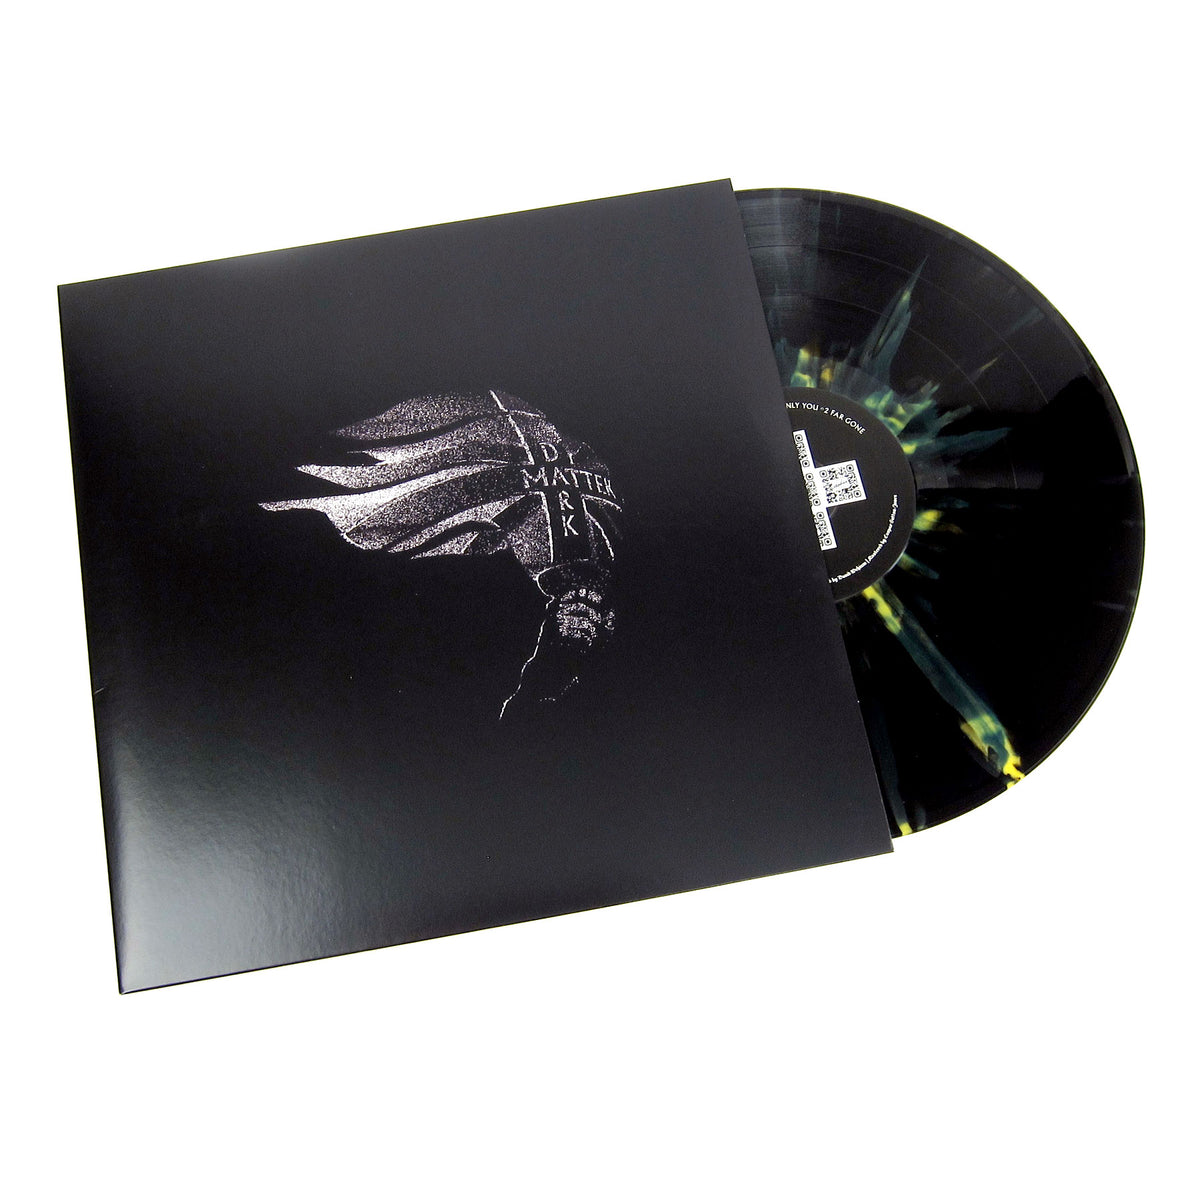 Moses Dark (Indie Exclusive Vinyl) Vinyl 2LP — TurntableLab.com